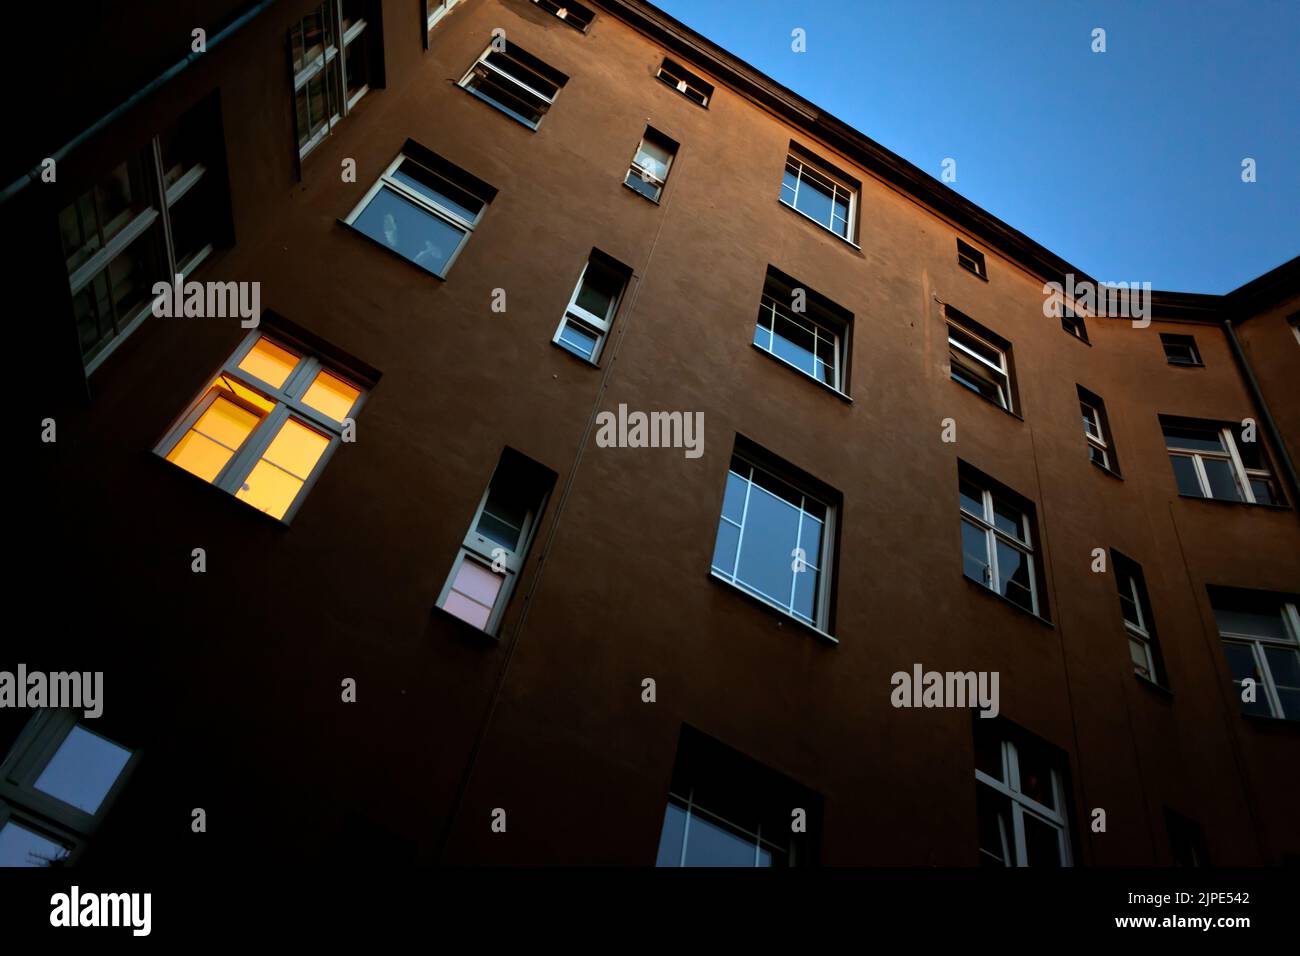 house, window, illuminated, houses, windows, illuminateds Stock Photo